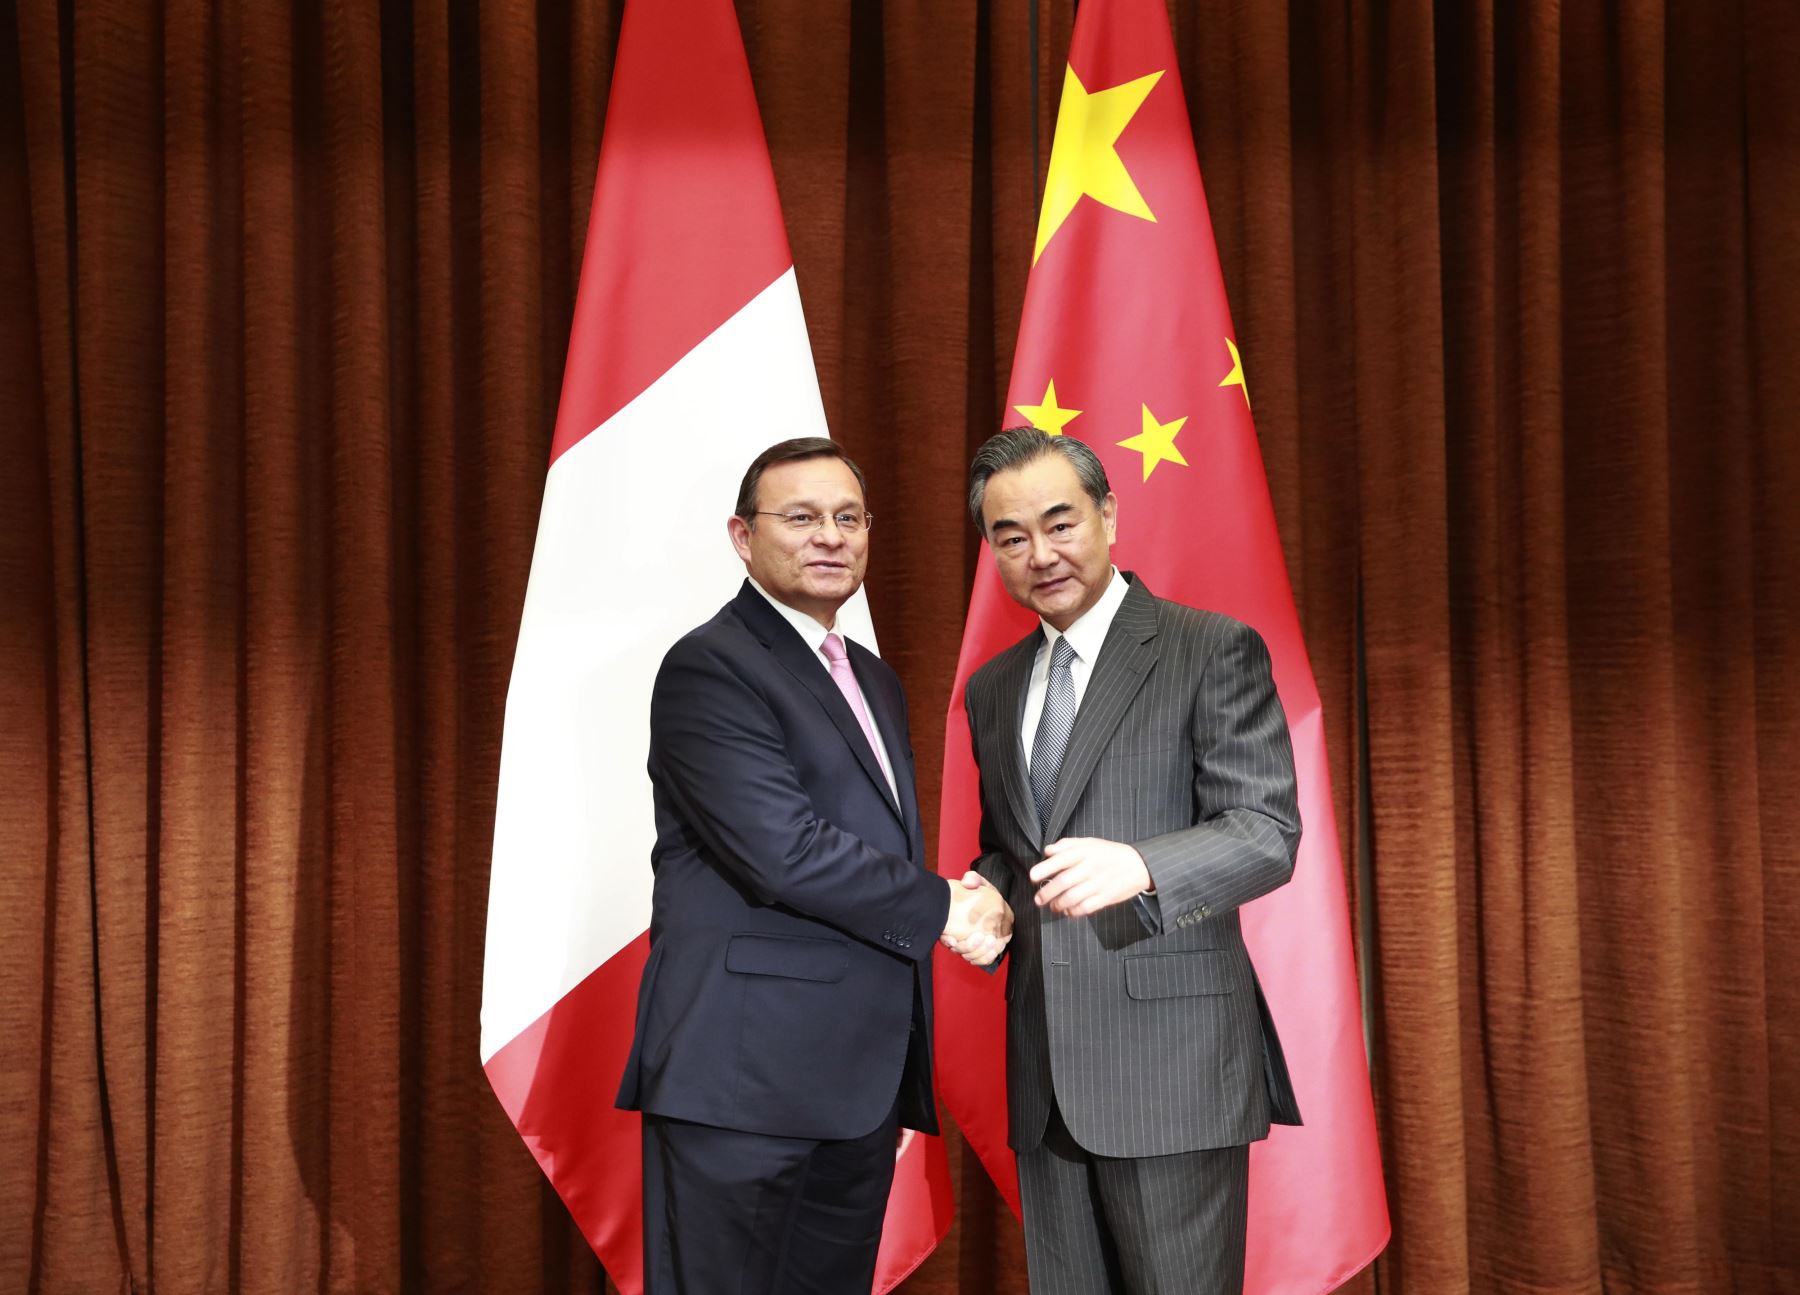 El ministro de Relaciones Exteriores de Perú, Néstor Popolizio, se reunió con su homólogo chino, Wang Yi.